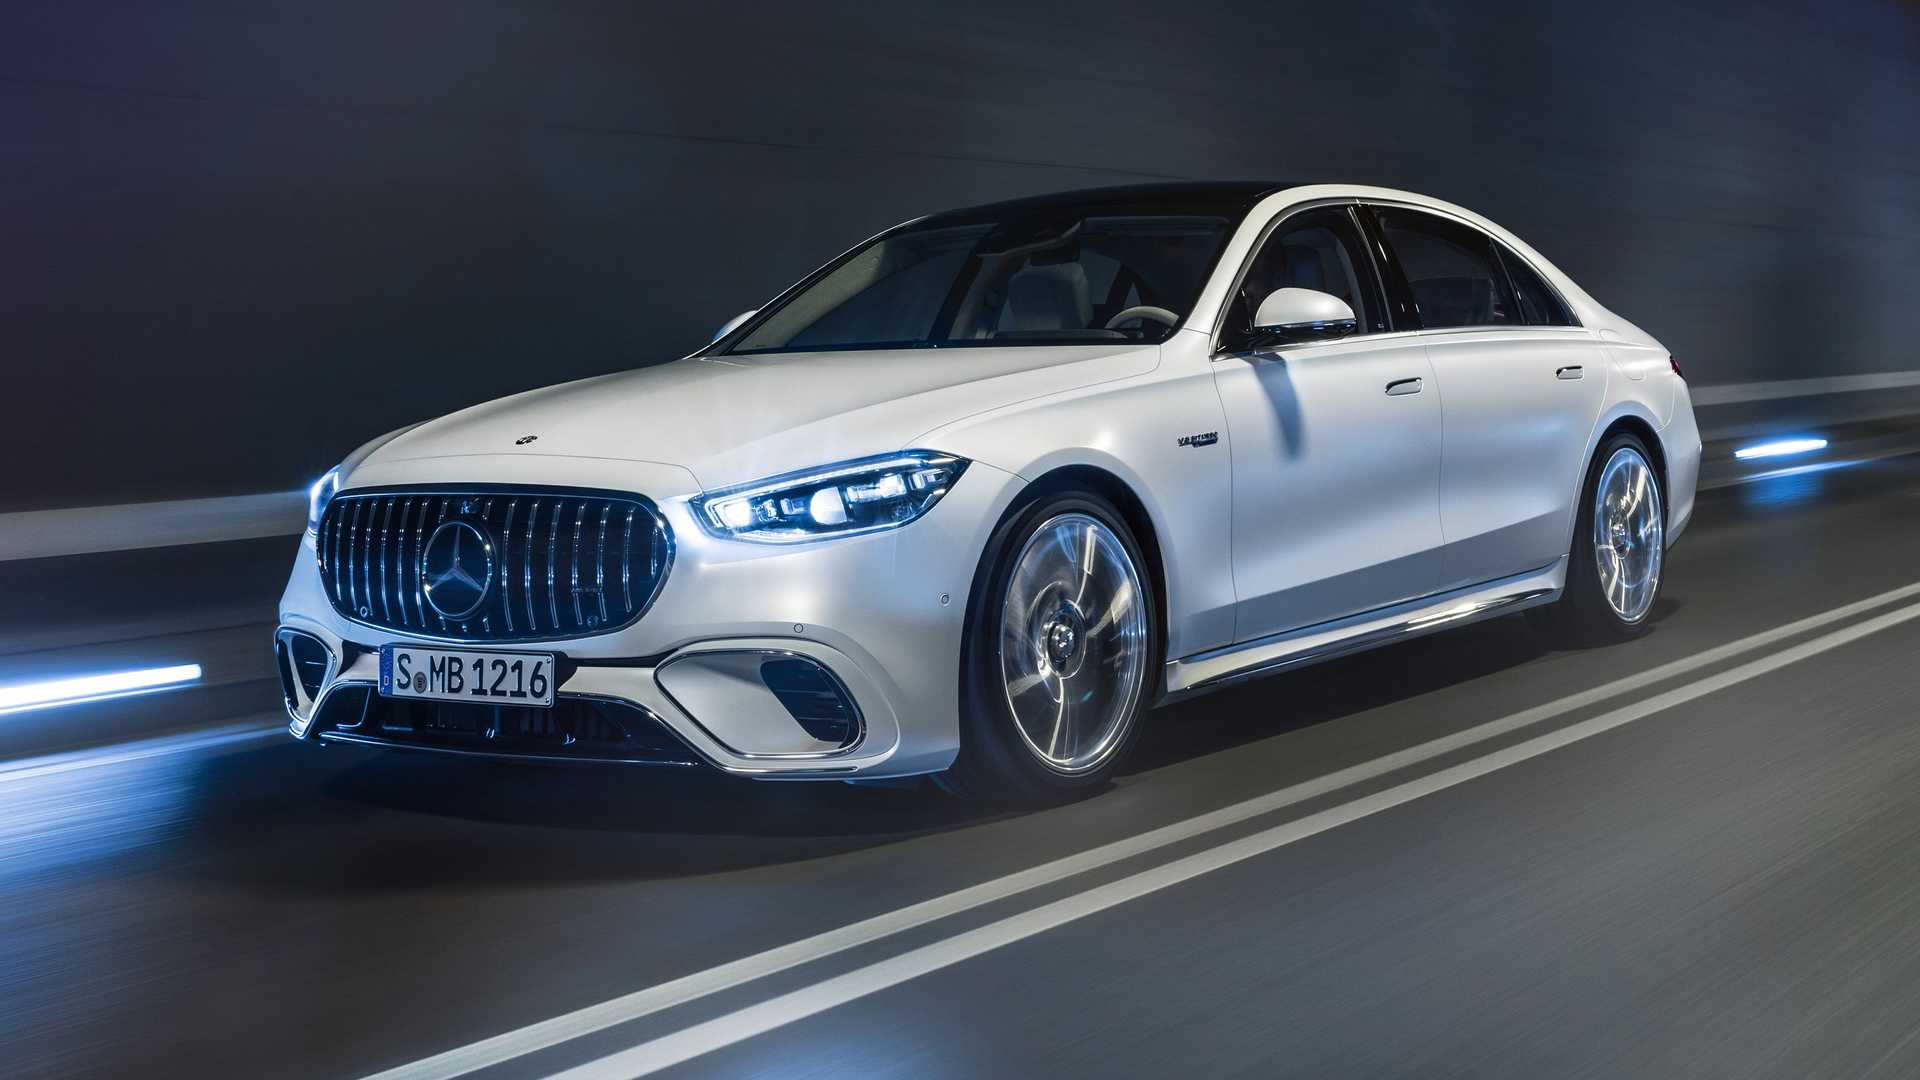 Mercedes-Benz quay lại đầu tư lớn vào động cơ đốt trong, dễ là hybrid, S-Class facelift sắp tới hưởng lợi- Ảnh 3.